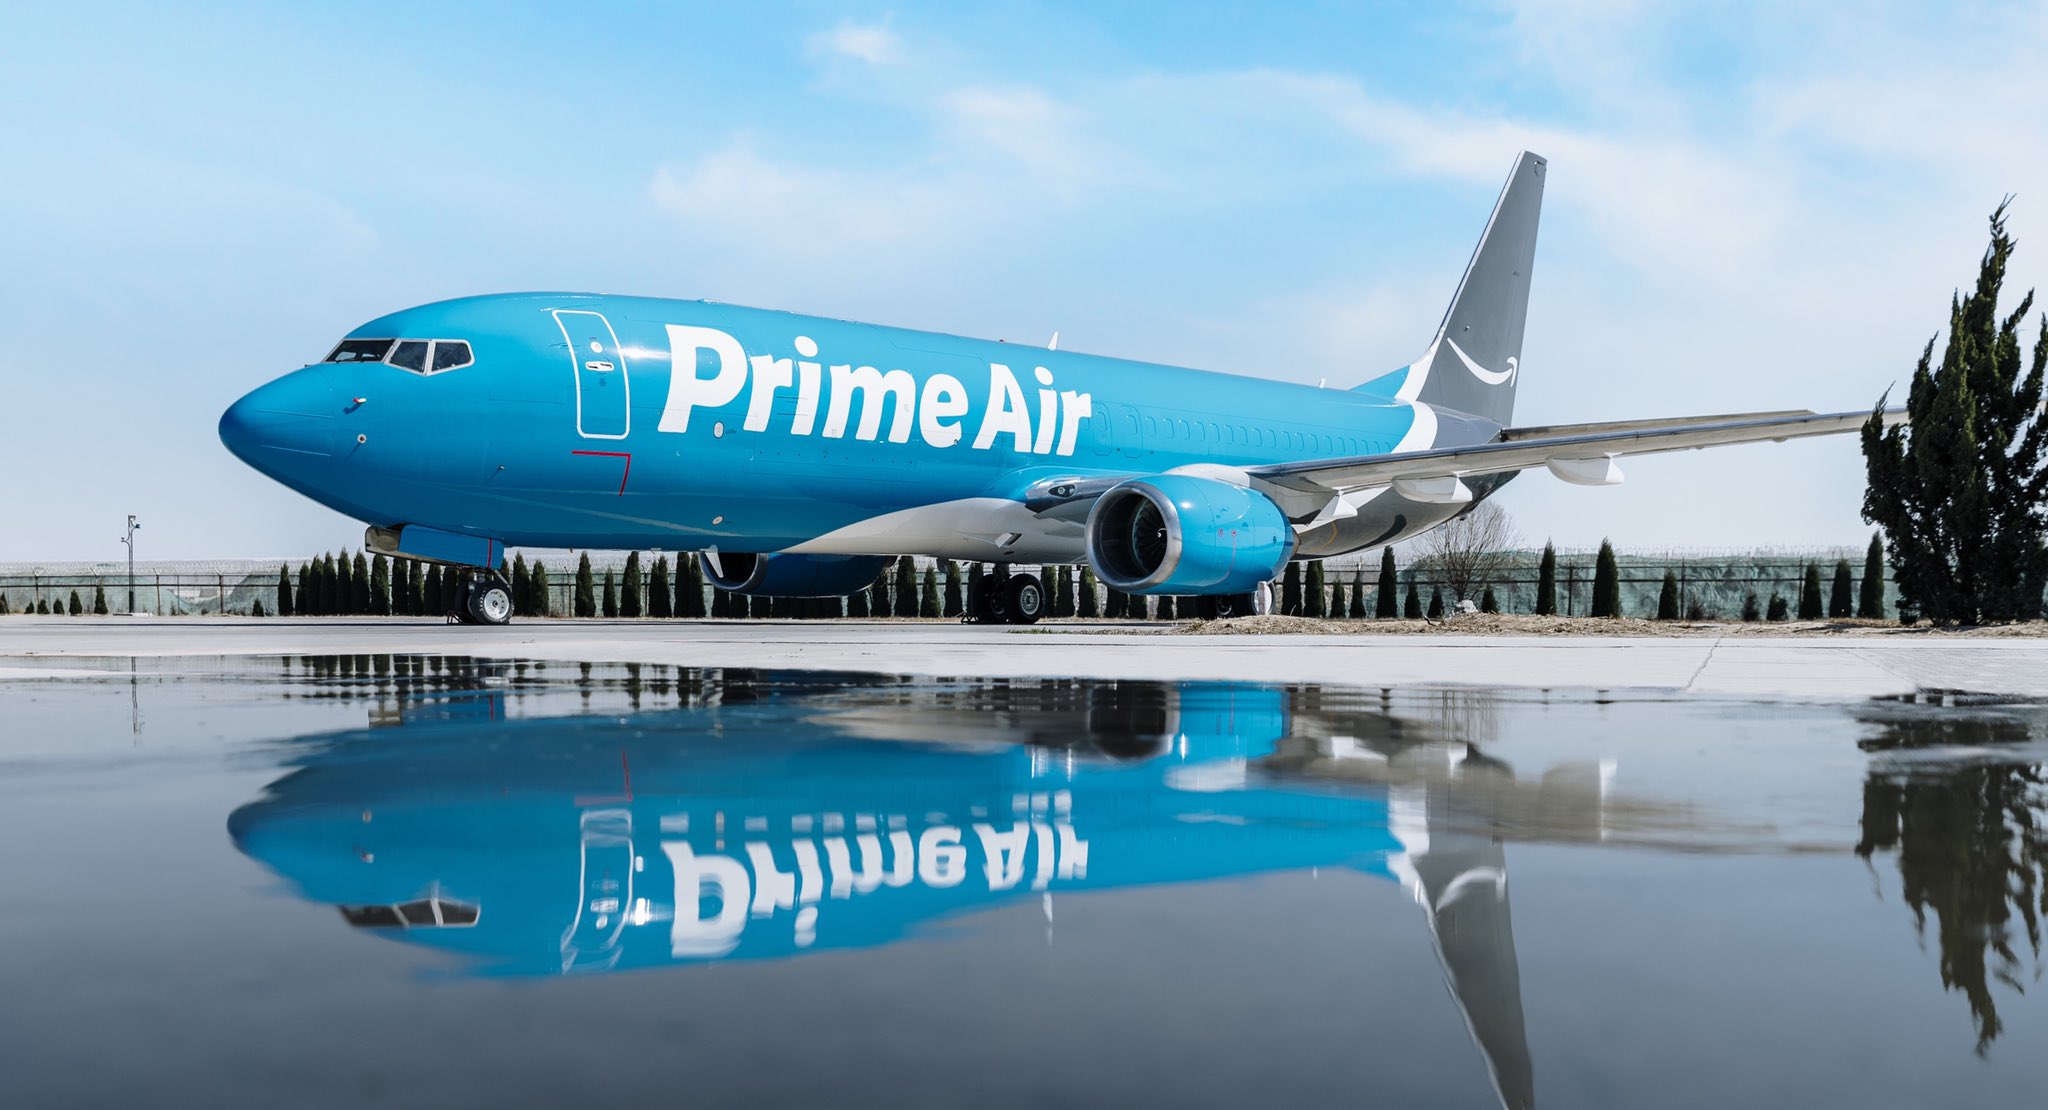 Amazon lần đầu mua 11 máy bay để giao hàng